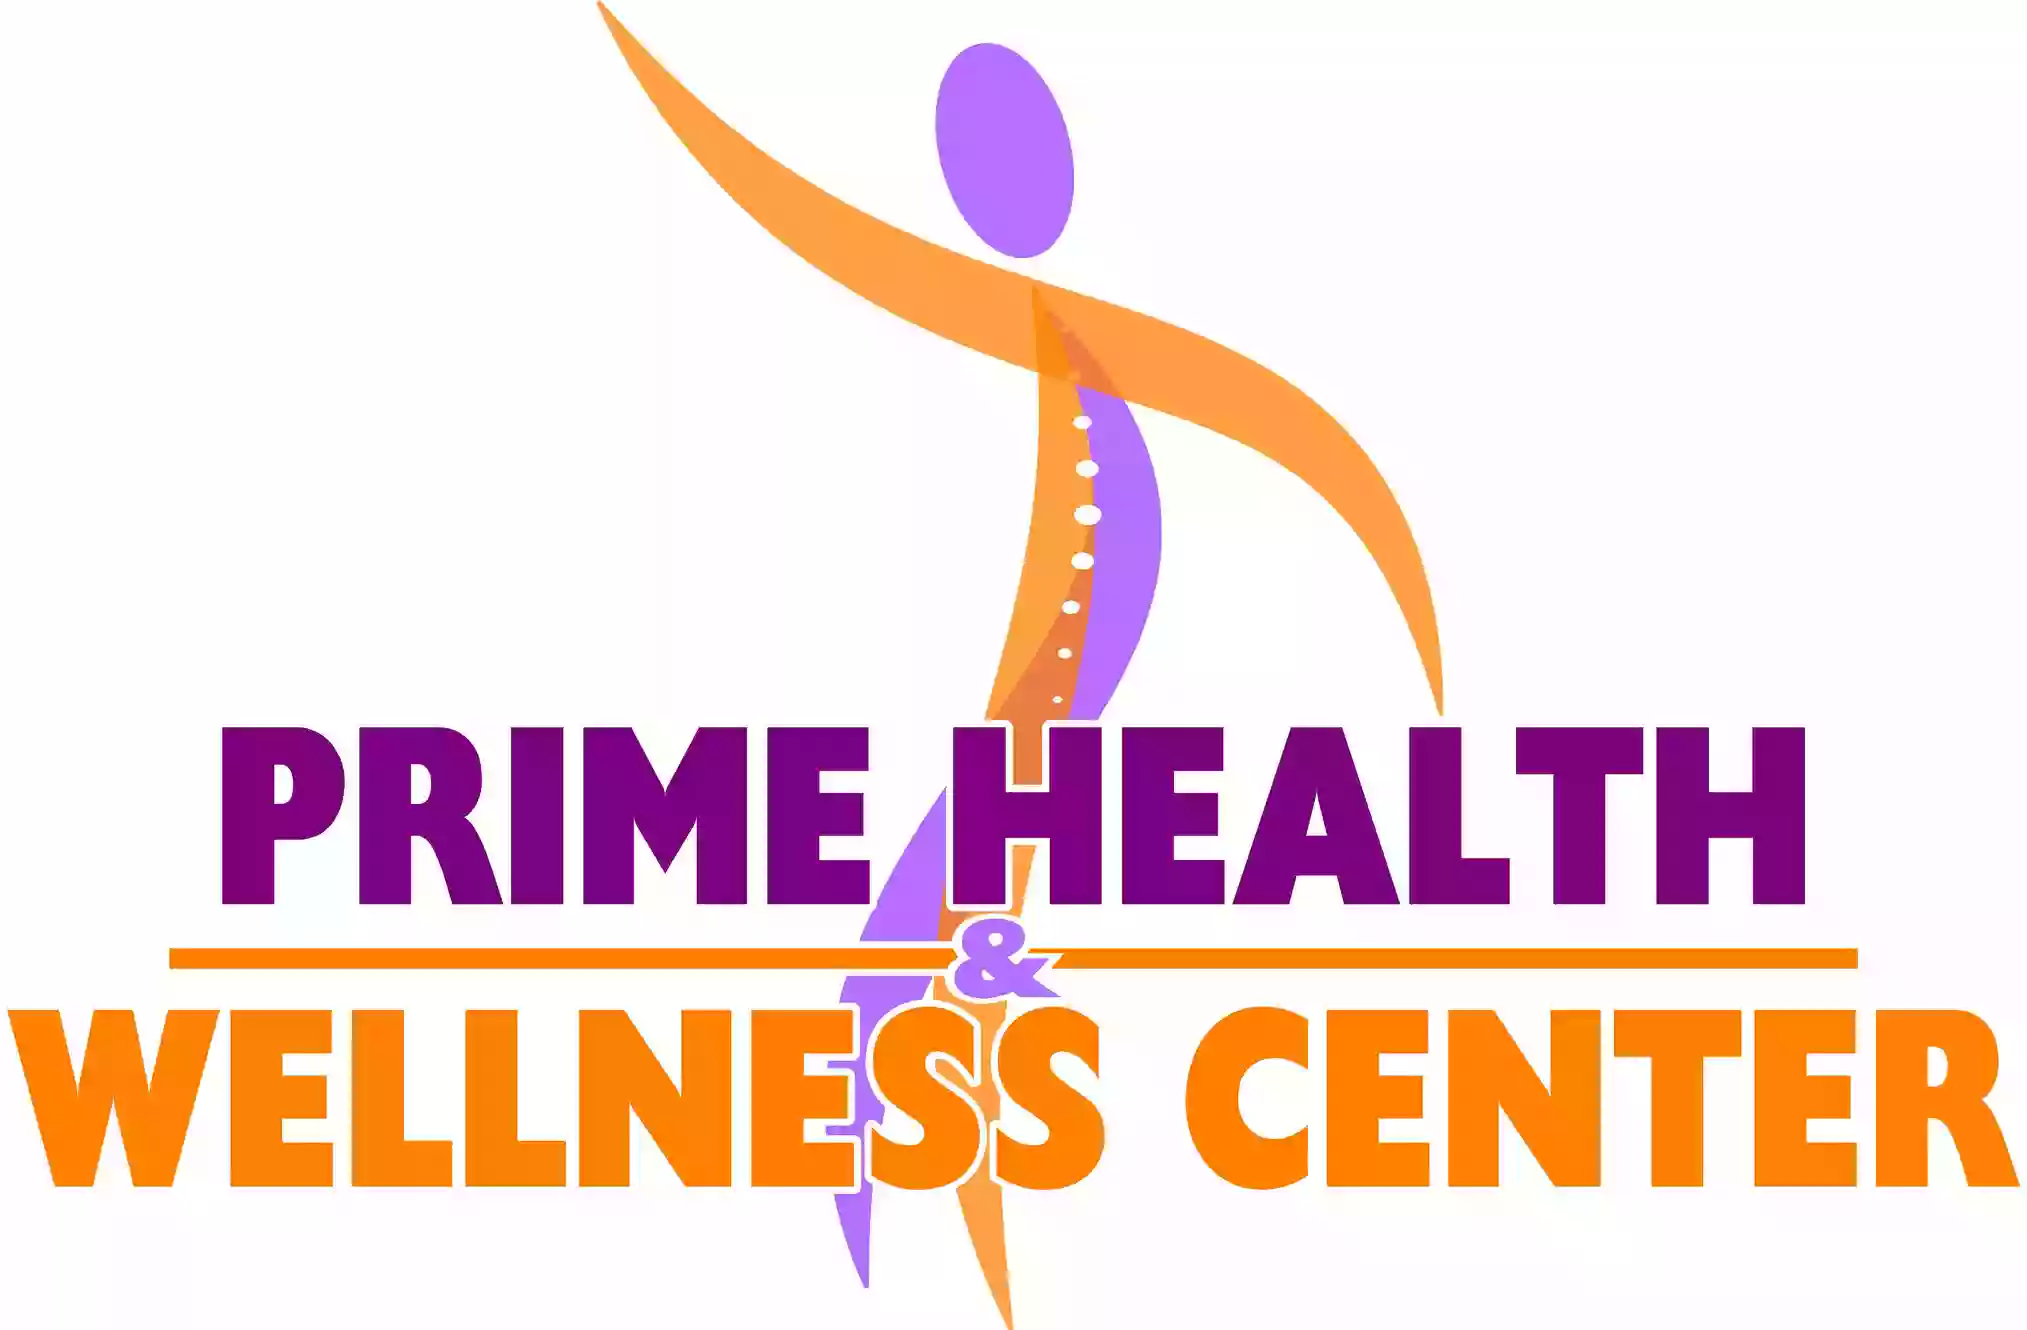 Prime Health & Wellness Center